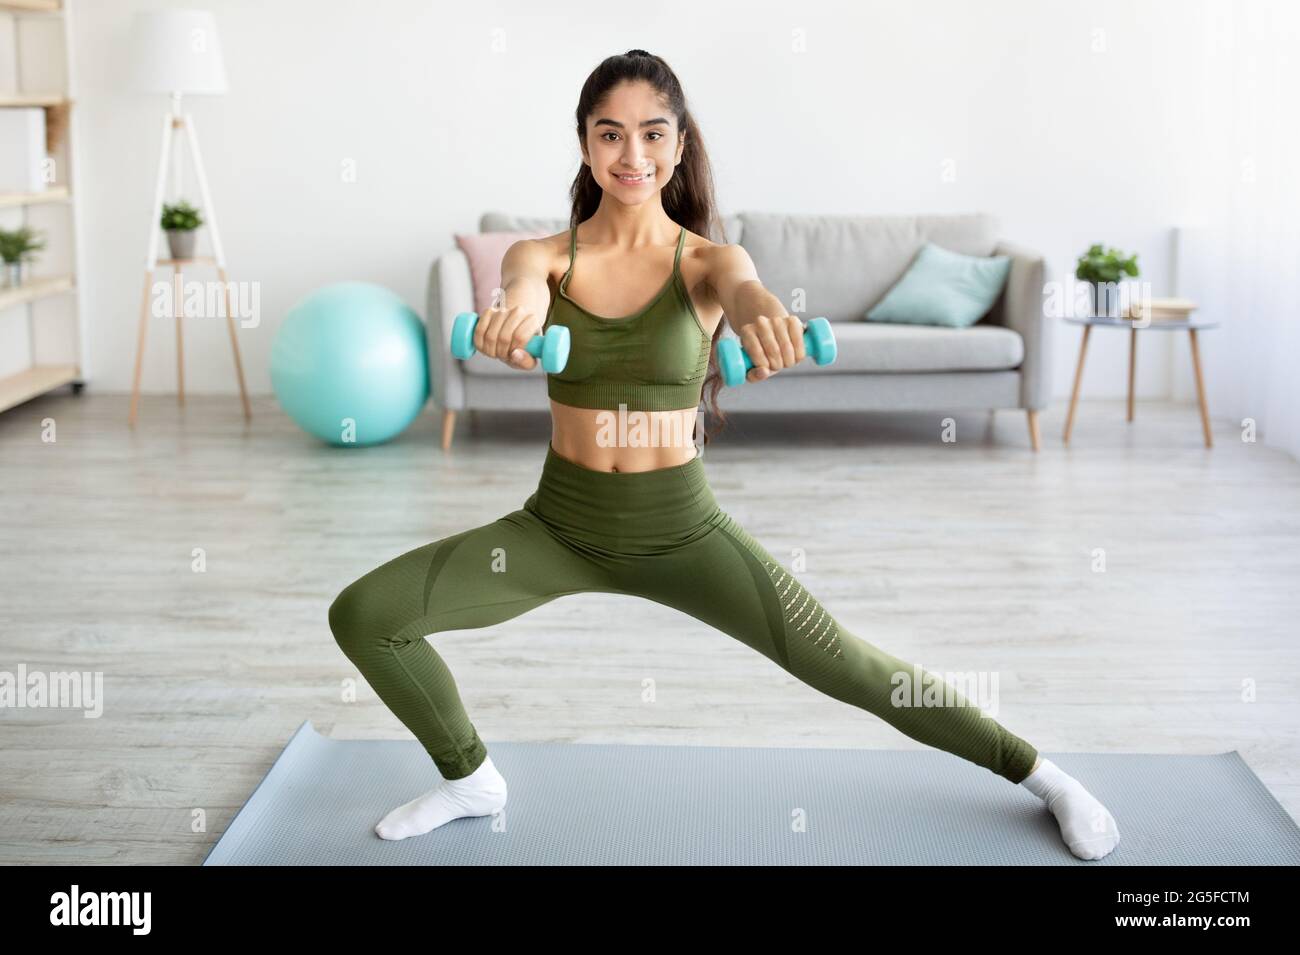 Concept d'entraînement de force. Femme indienne athlétique faisant des exercices avec des haltères à l'intérieur, pleine longueur. Joyeuse dame de l'est travaillant les muscles du bras, l Banque D'Images